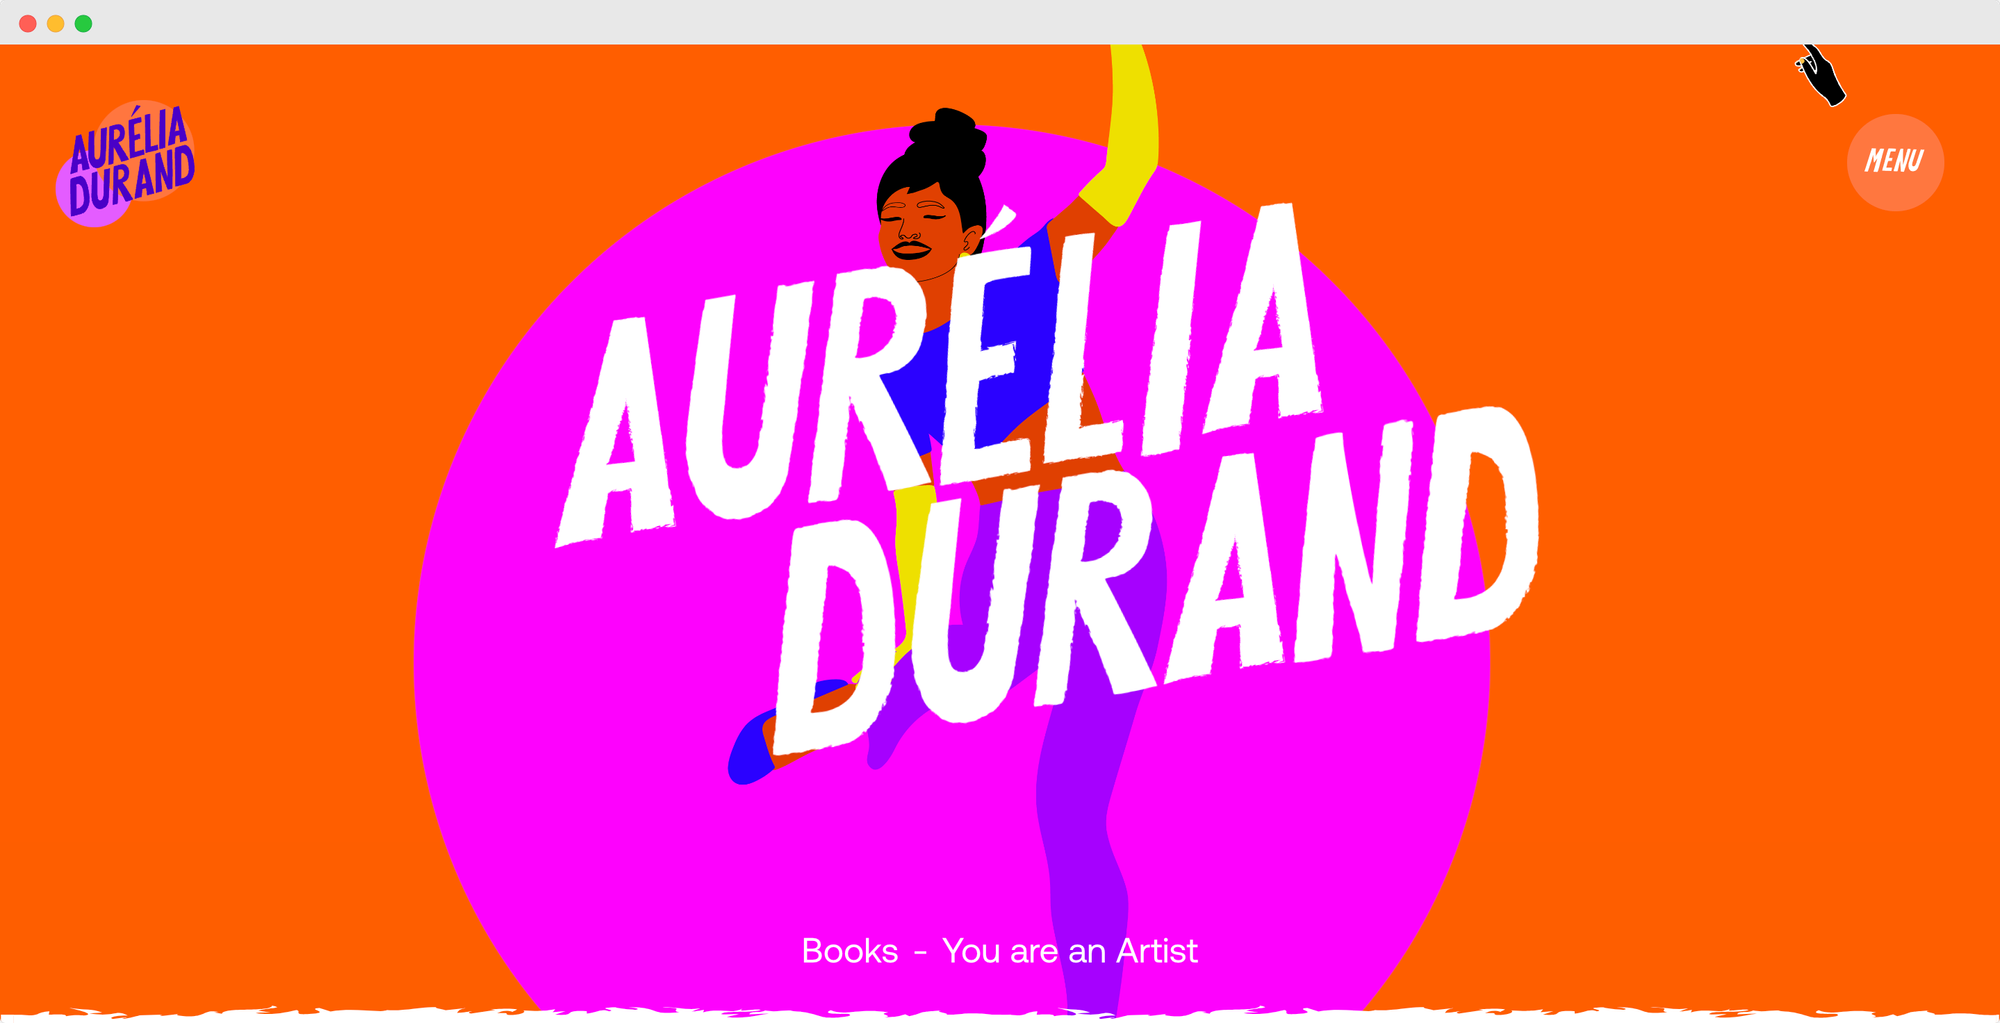 Aurelia Durand's portfolio